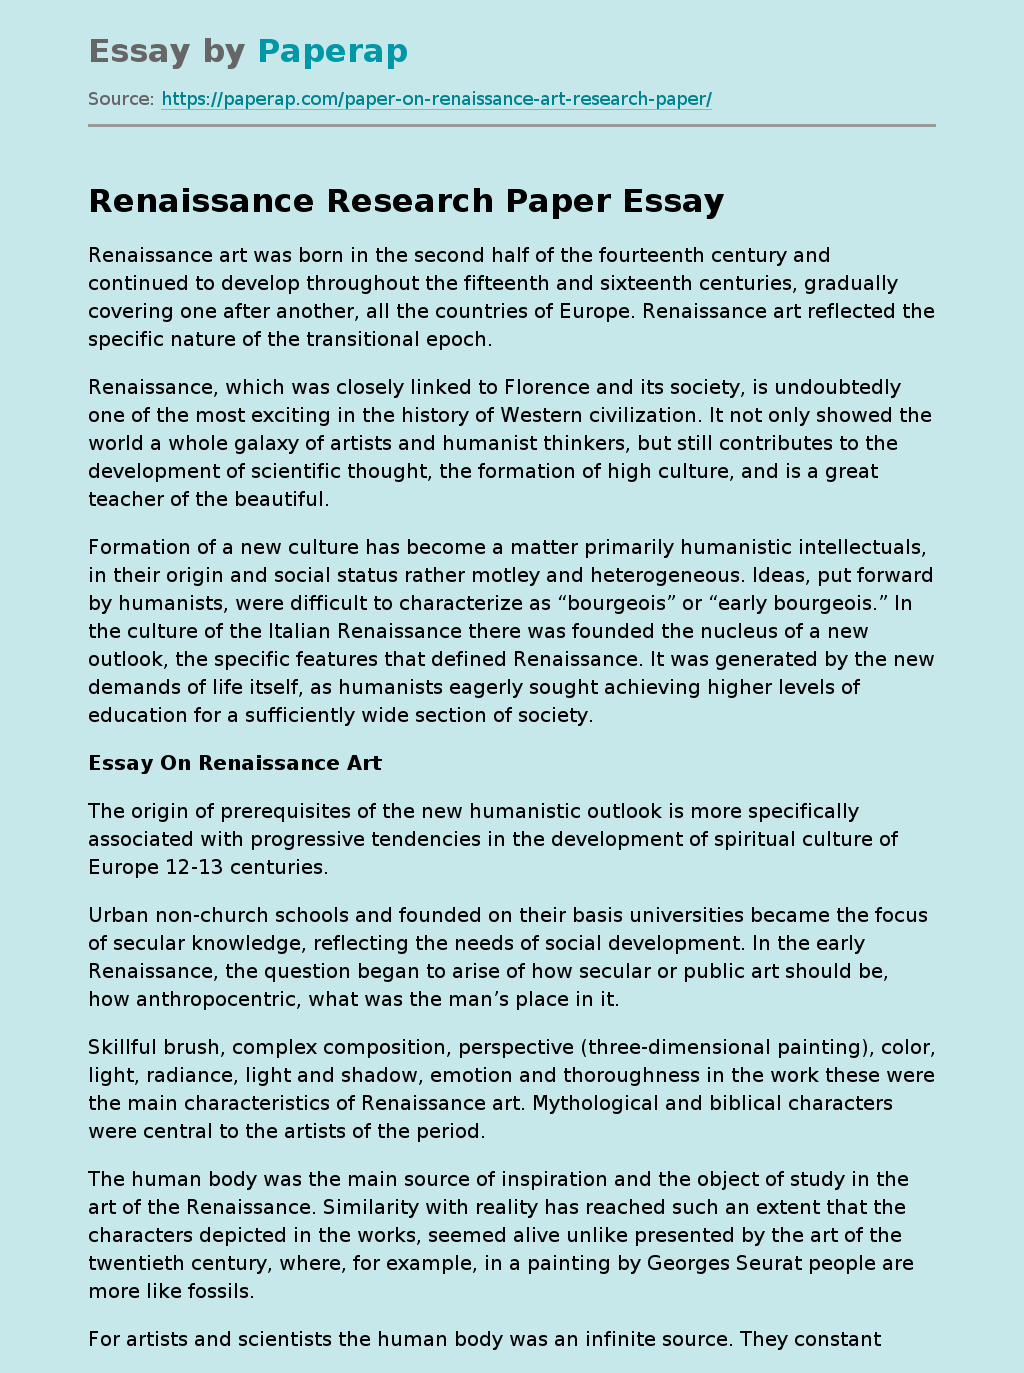 Renaissance Research Paper